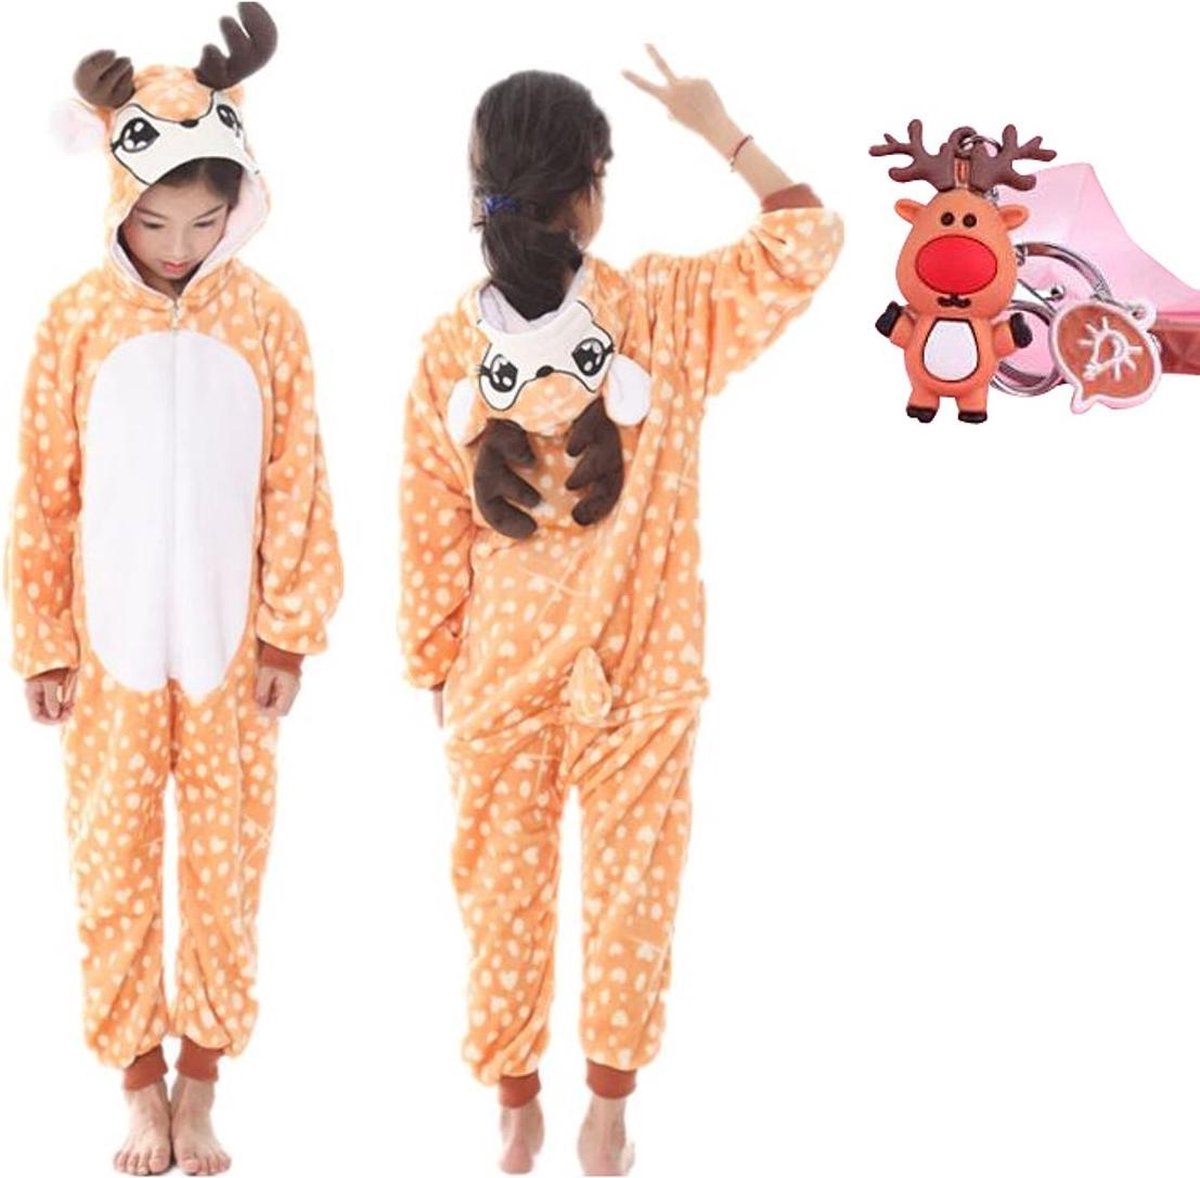 Onesie rendier- hert - eland dieren kostuum jumpsuit pyjama kinderen - 128-134 (130) + GRATIS tas/sleutelhanger verkleedkleding